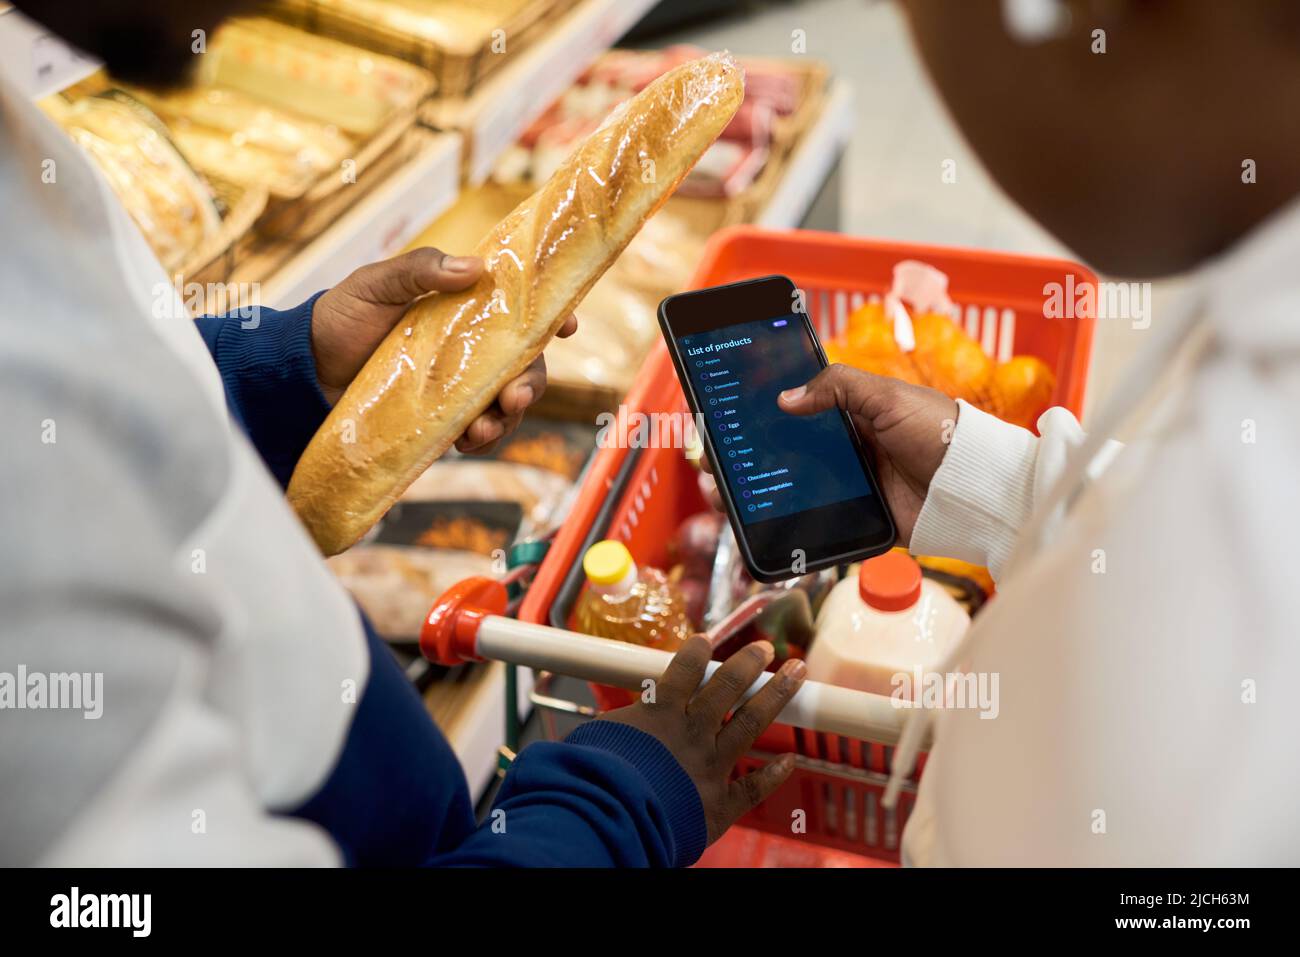 Einkaufsliste auf dem Bildschirm des Smartphones, die von einer jungen afroamerikanischen Frau über dem Wagen mit frischen Lebensmitteln aus der Lebensmittelabteilung gehalten wird Stockfoto